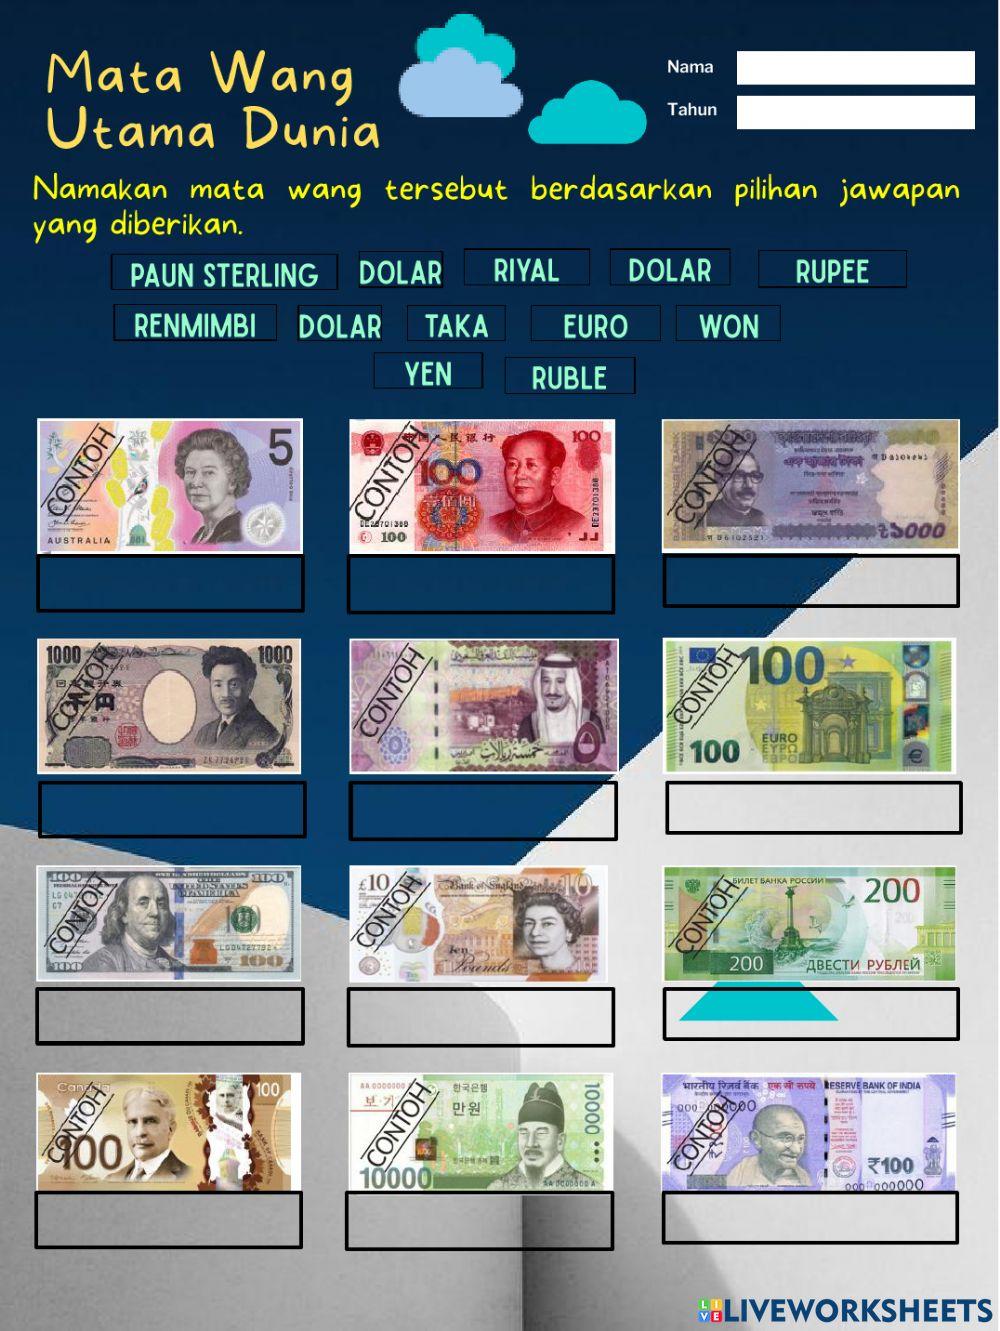 Mata wang utama dunia